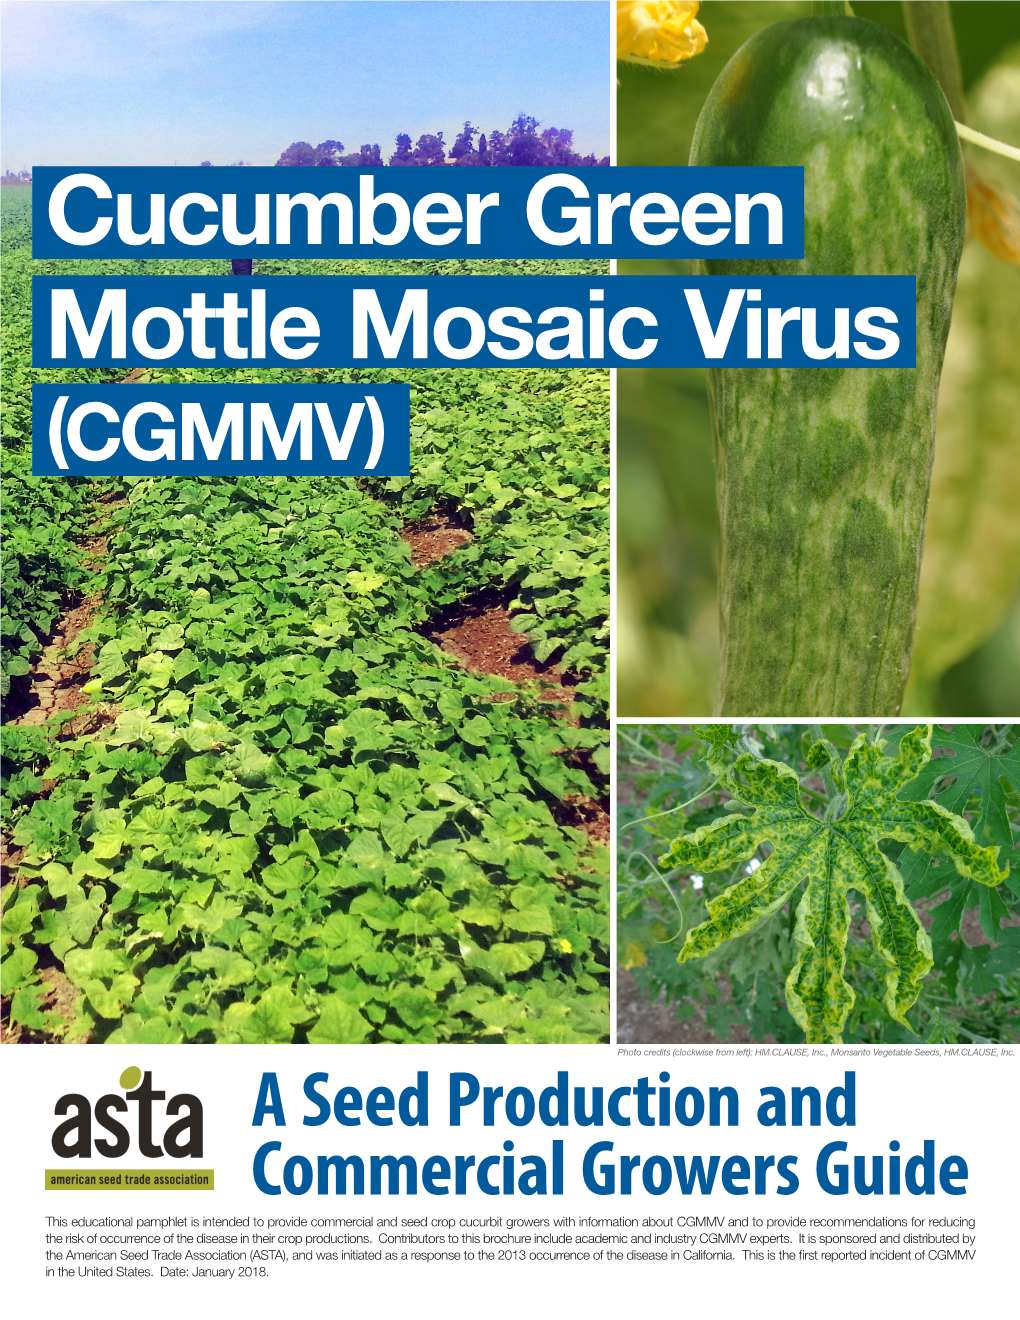 Cucumber Green Mottle Mosaic Virus (CGMMV)